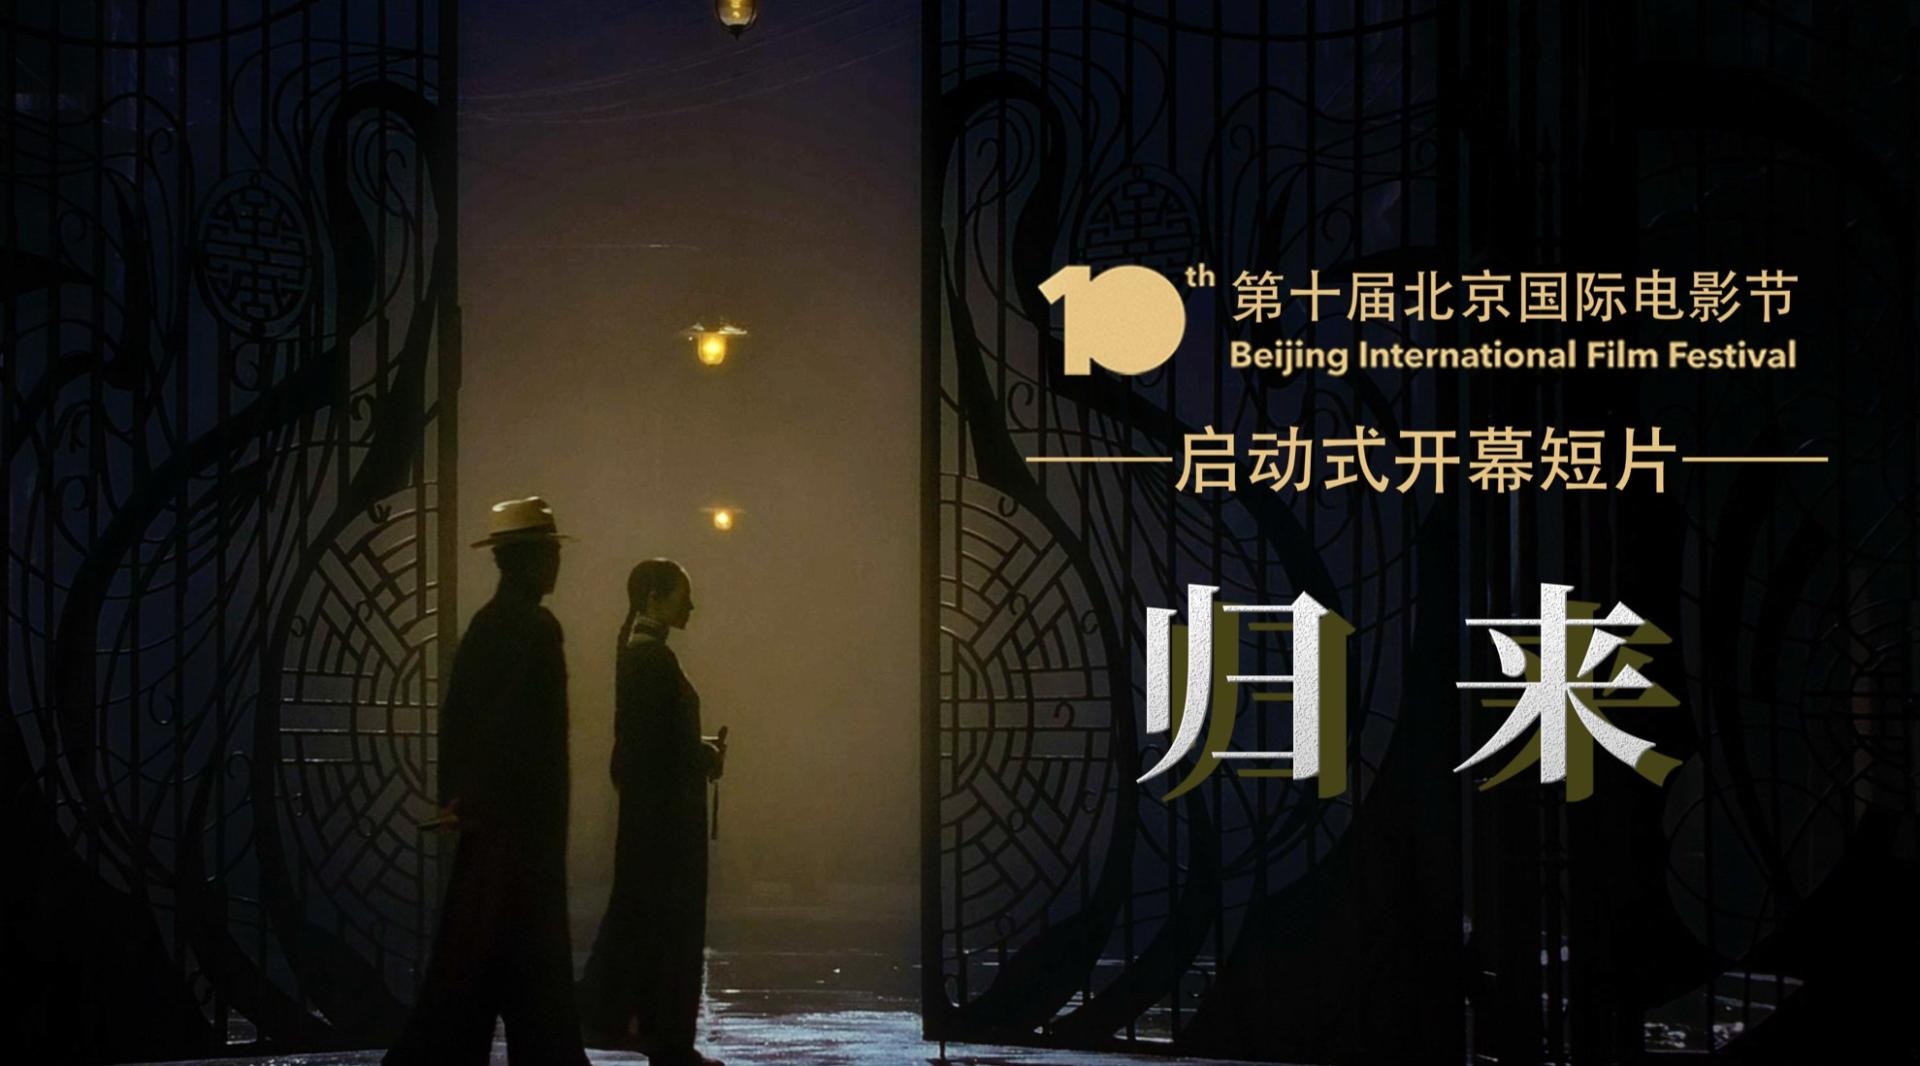 【第十届北京国际电影节】开幕混剪《归来》